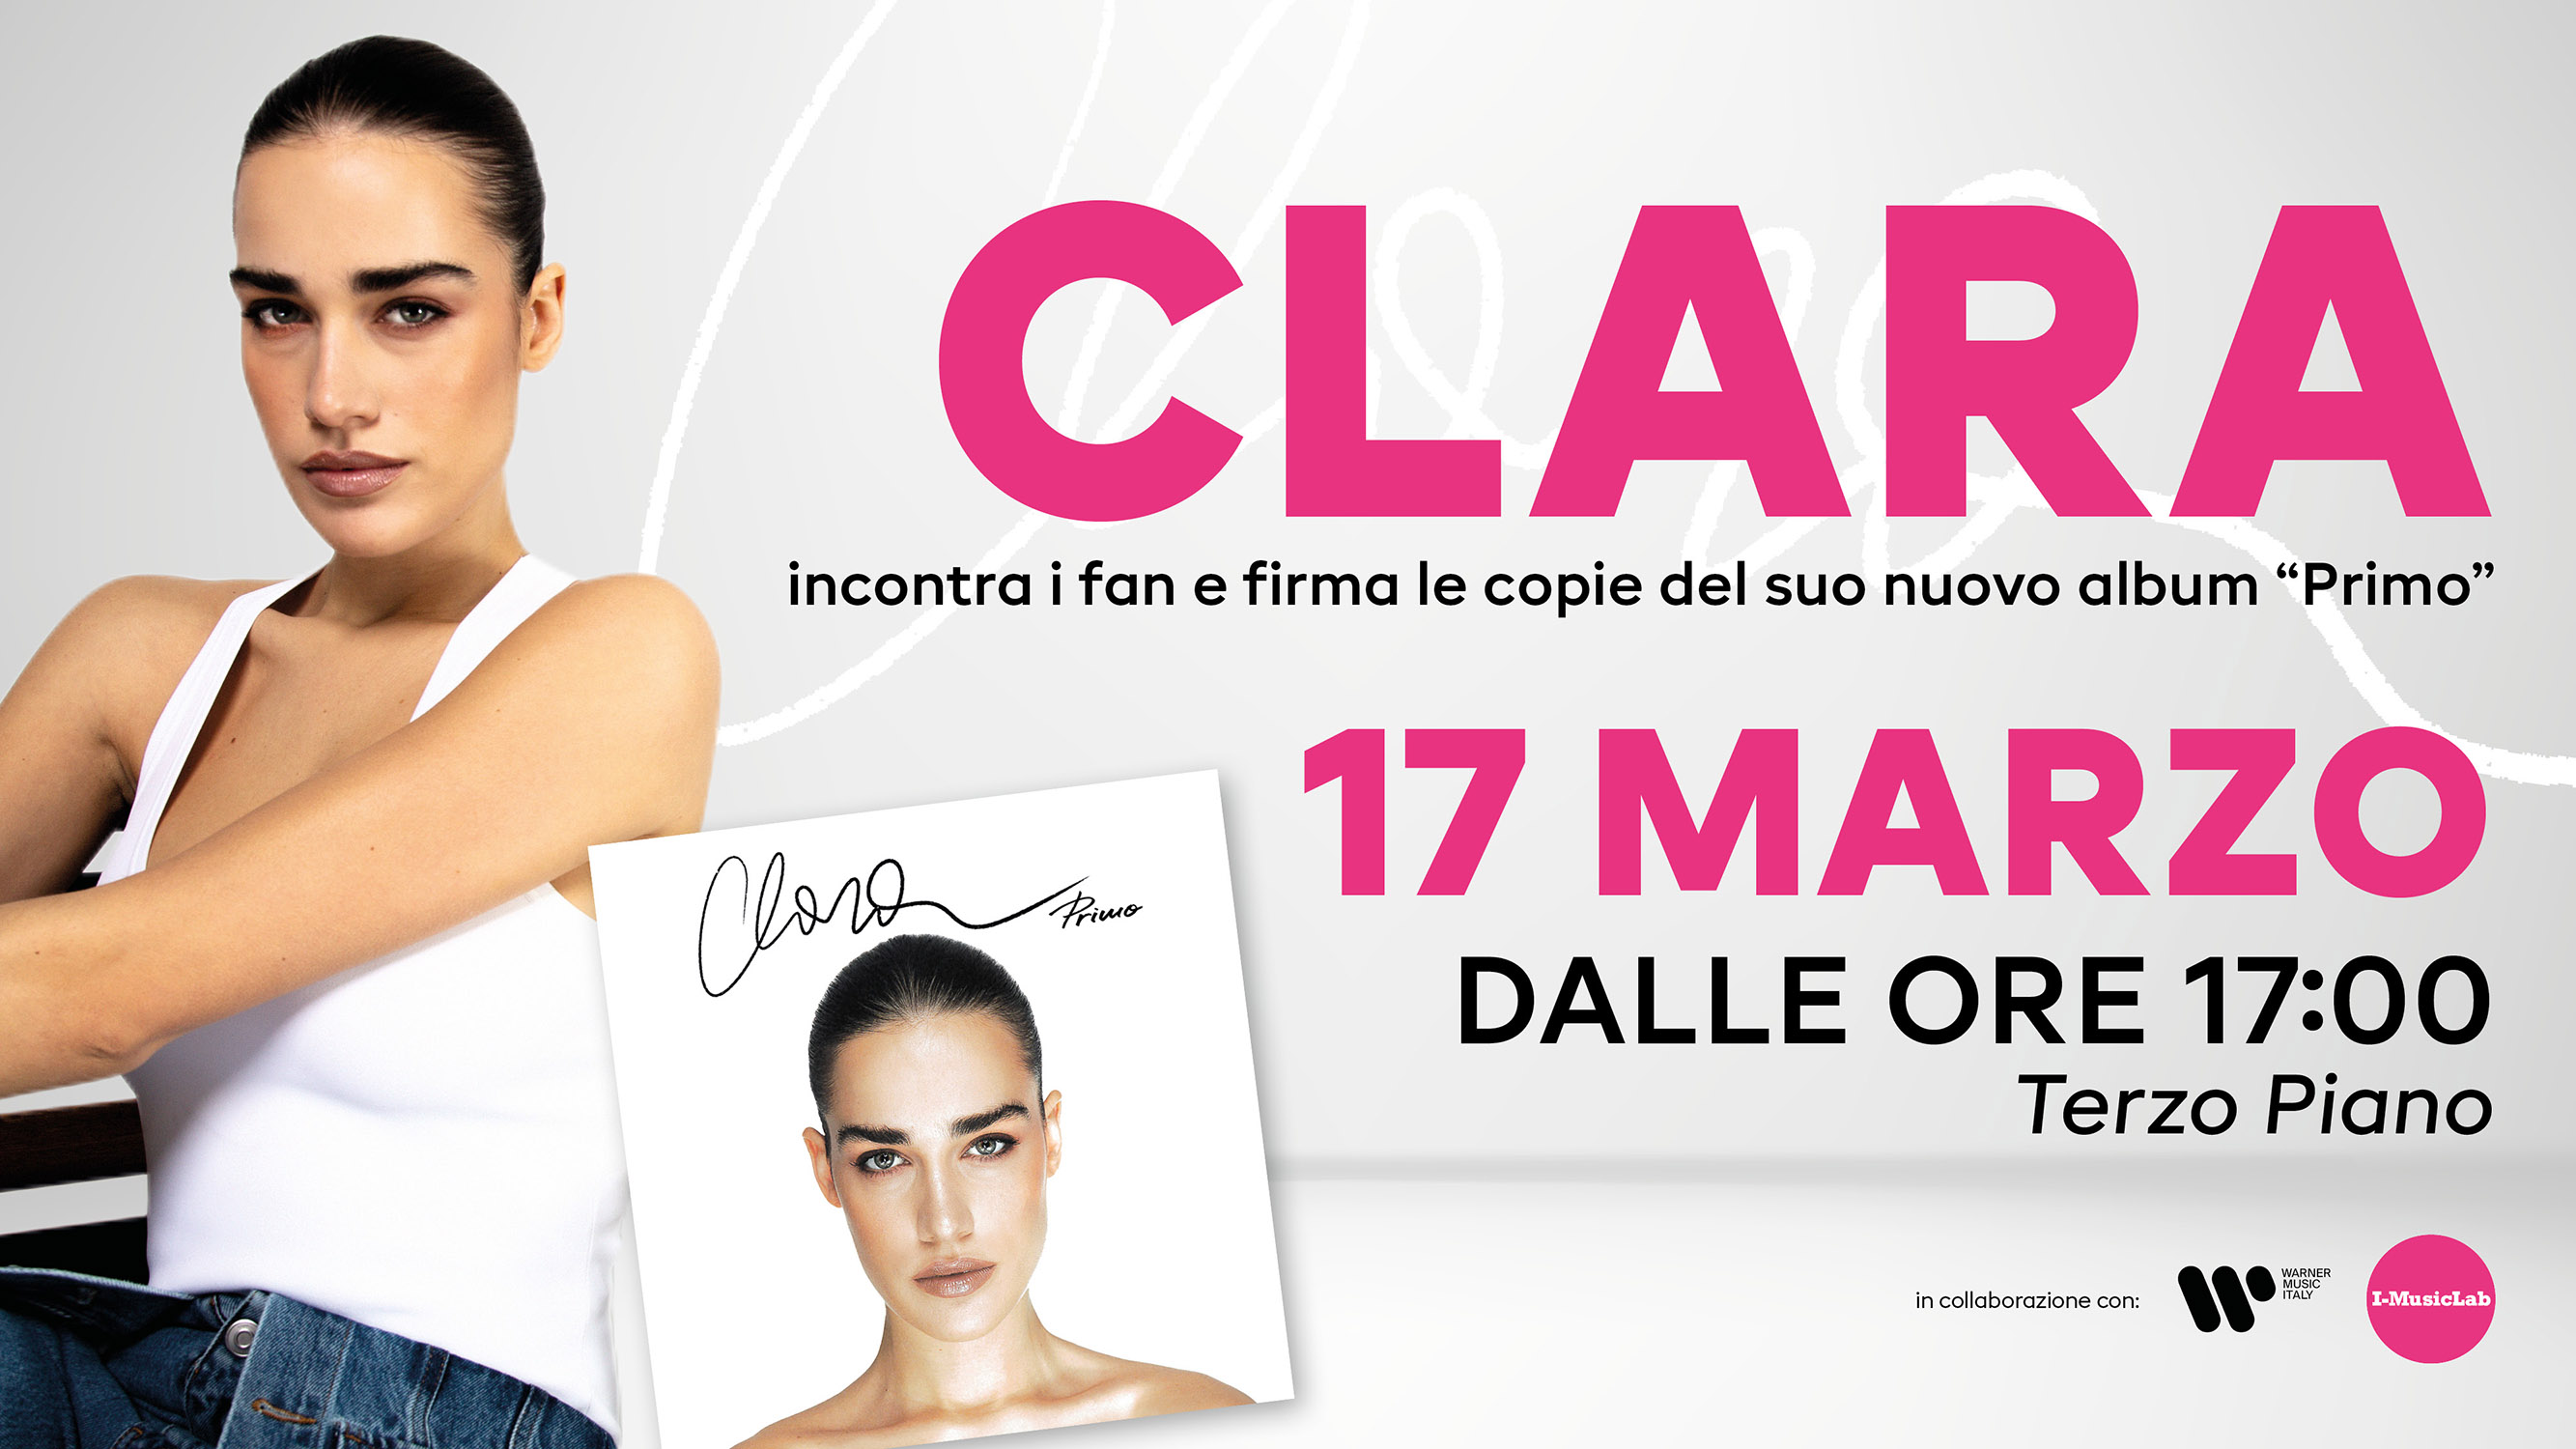 Clara incontra i fan e firma le copie del suo nuovo album “Primo”